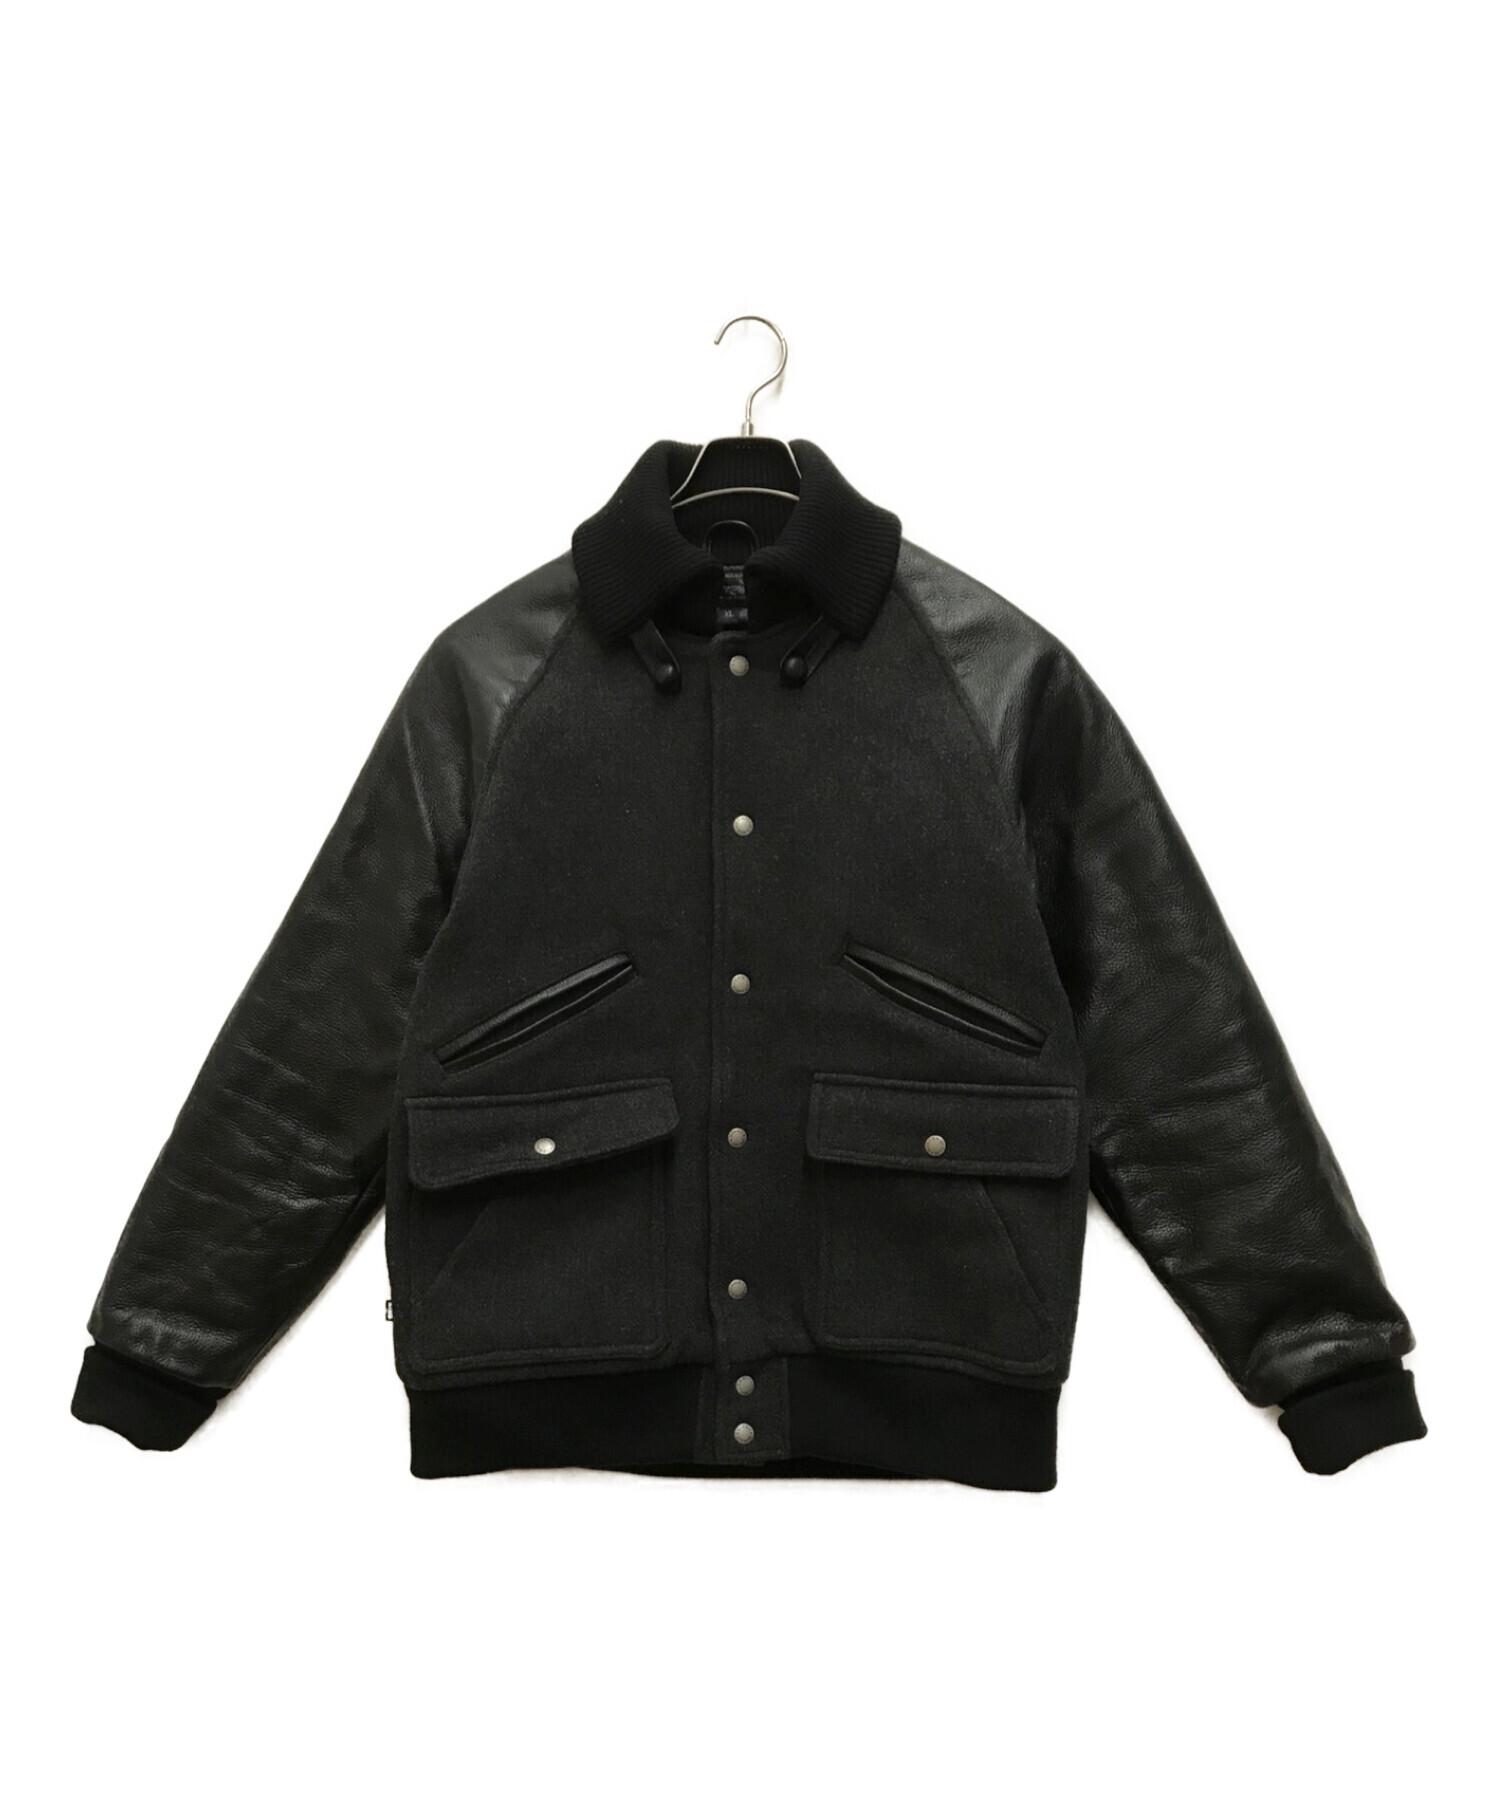 NITRAID (ナイトレイド) クラブジャケット グレー×ブラック サイズ:XL